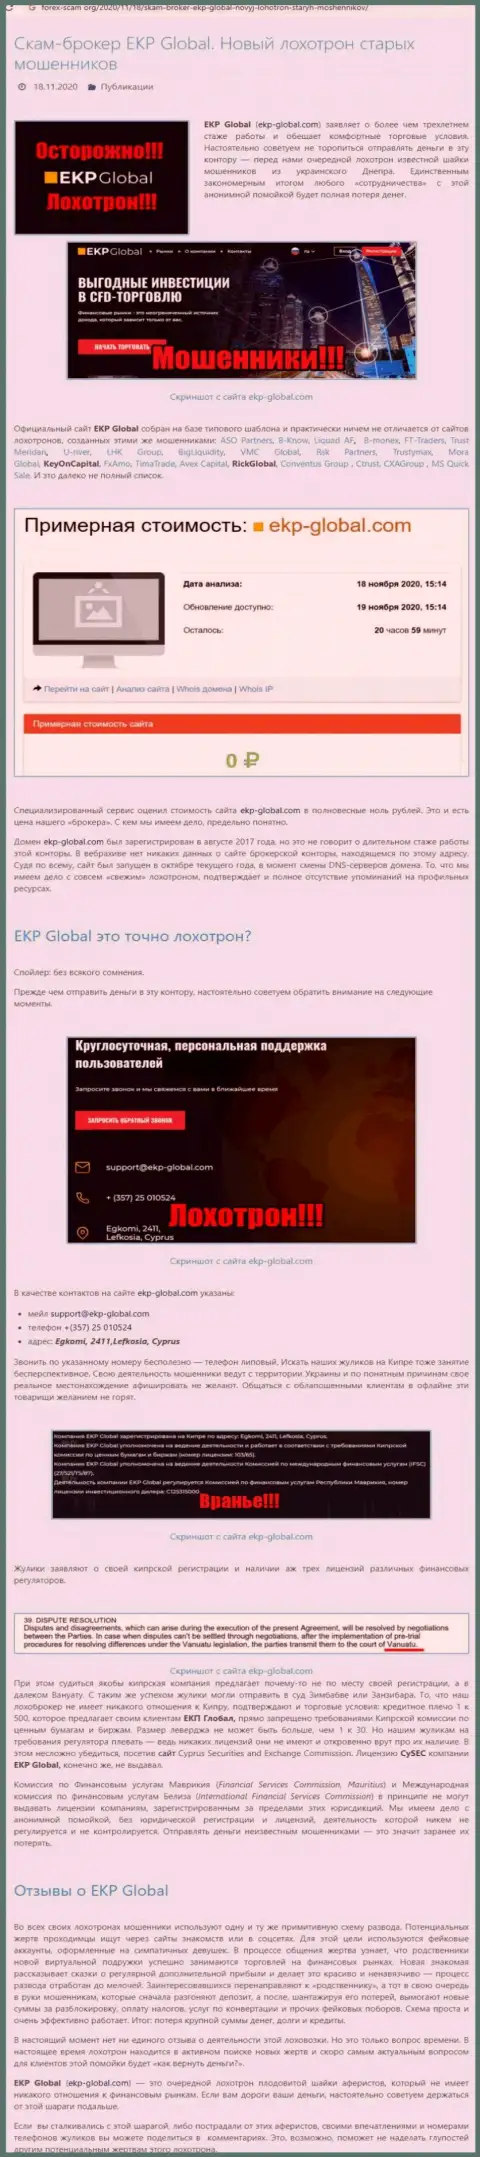 С организации EKP-Global Com забрать финансовые вложения не сможете - это обзор противозаконных деяний интернет-мошенников